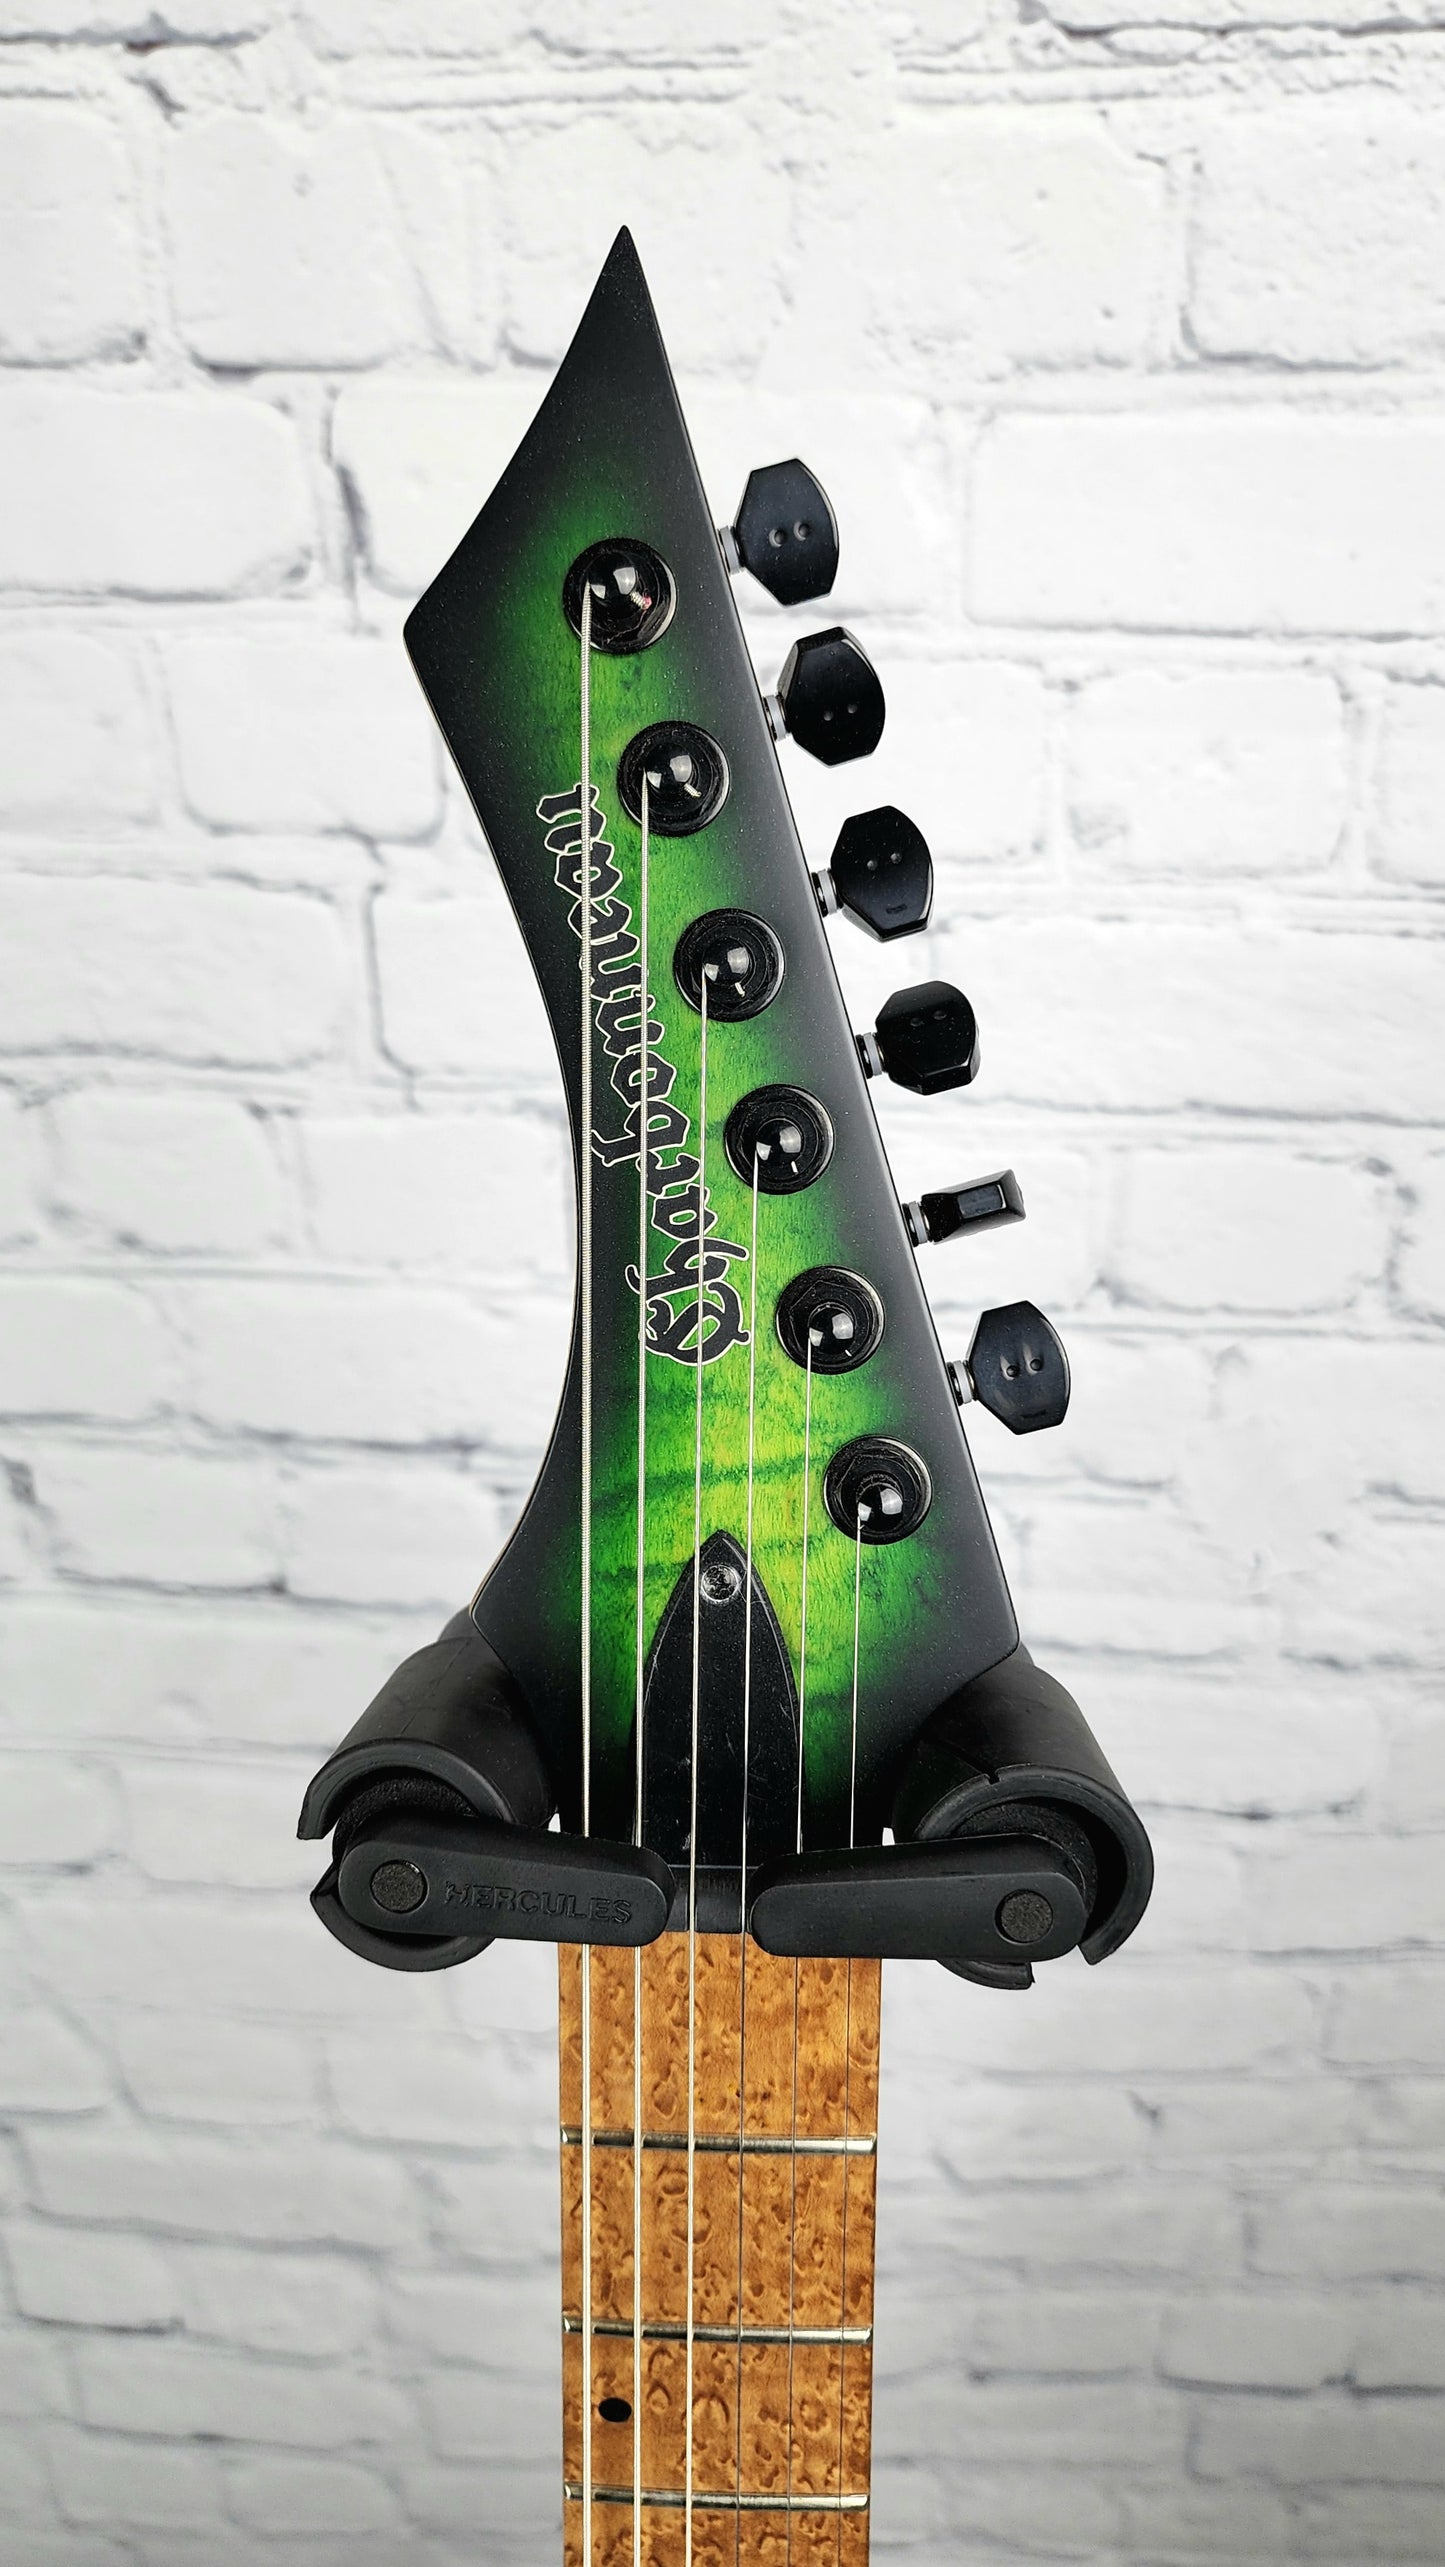 Charbonneau Guitars Scimtar 6S String Green Burst Electric Guitar Bare Knuckle Hipshot